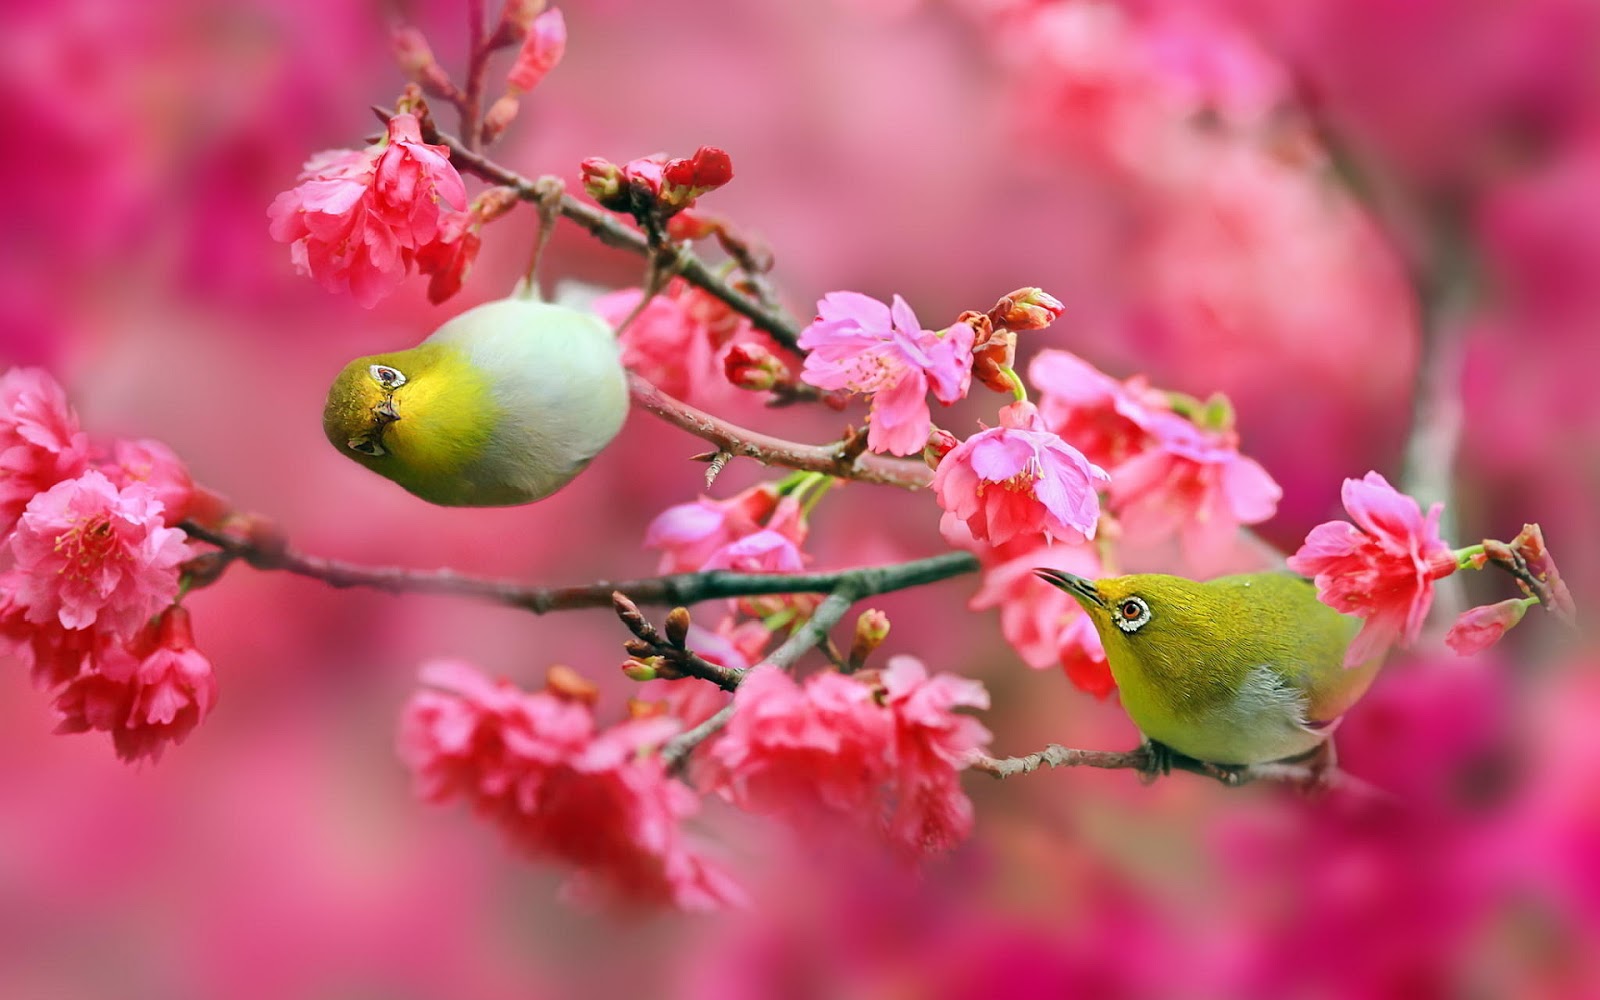 Koleksi Dp Bbm Bergerak Bunga Sakura Kumpulan Gambar Meme Lucu